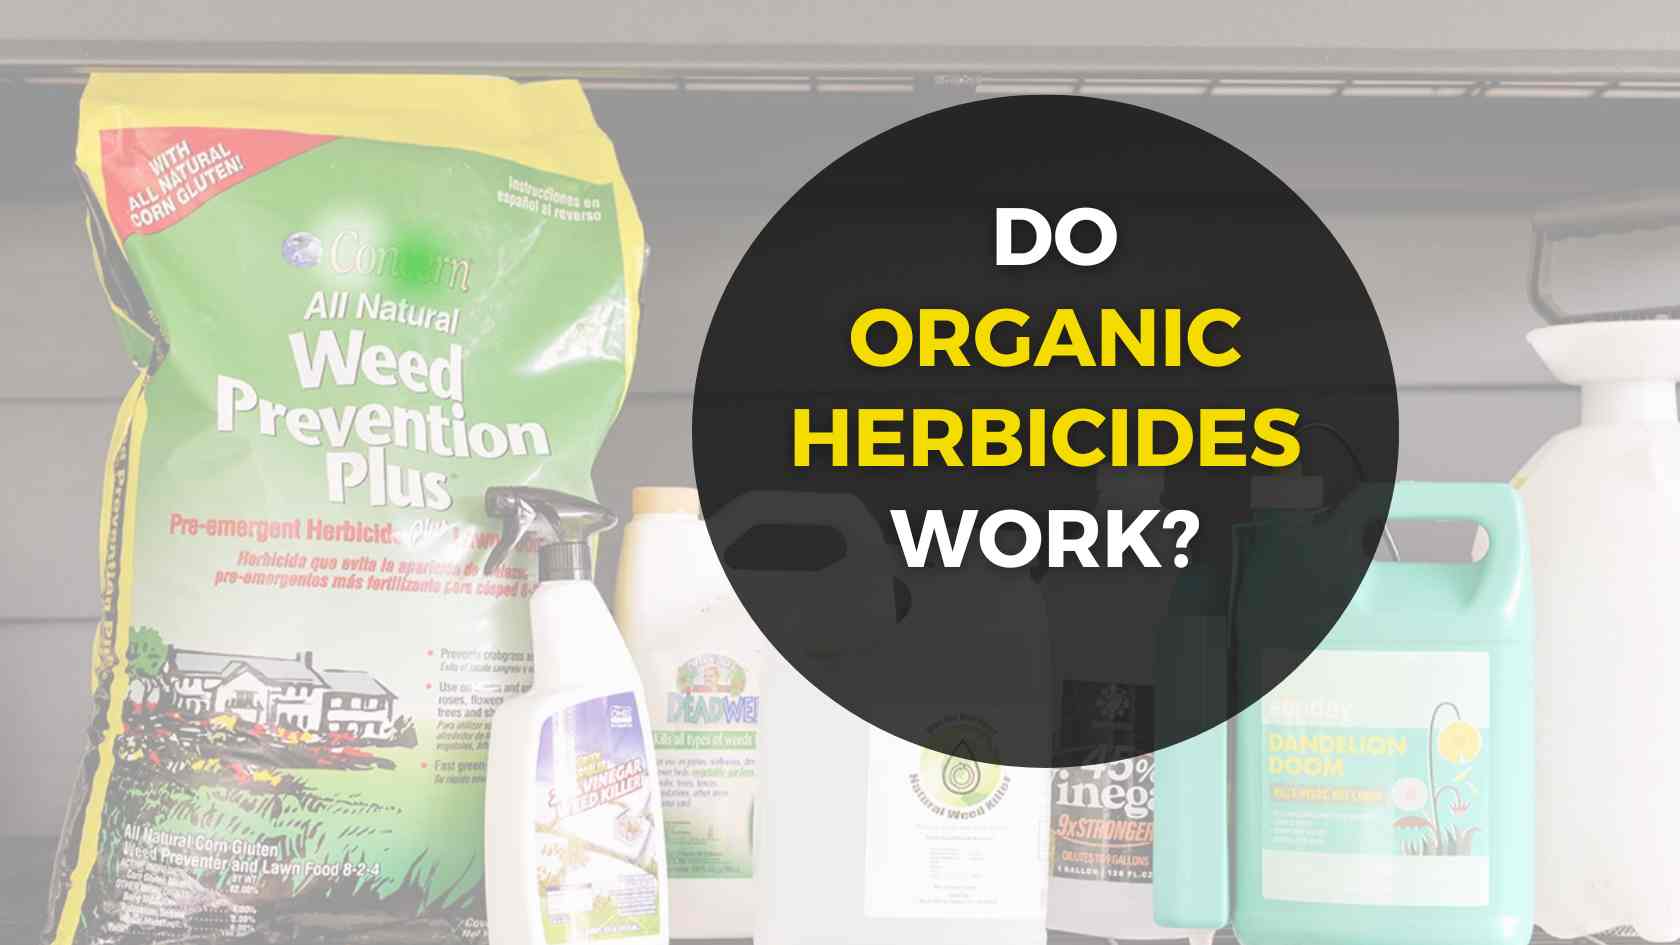 Do organic herbicides work?